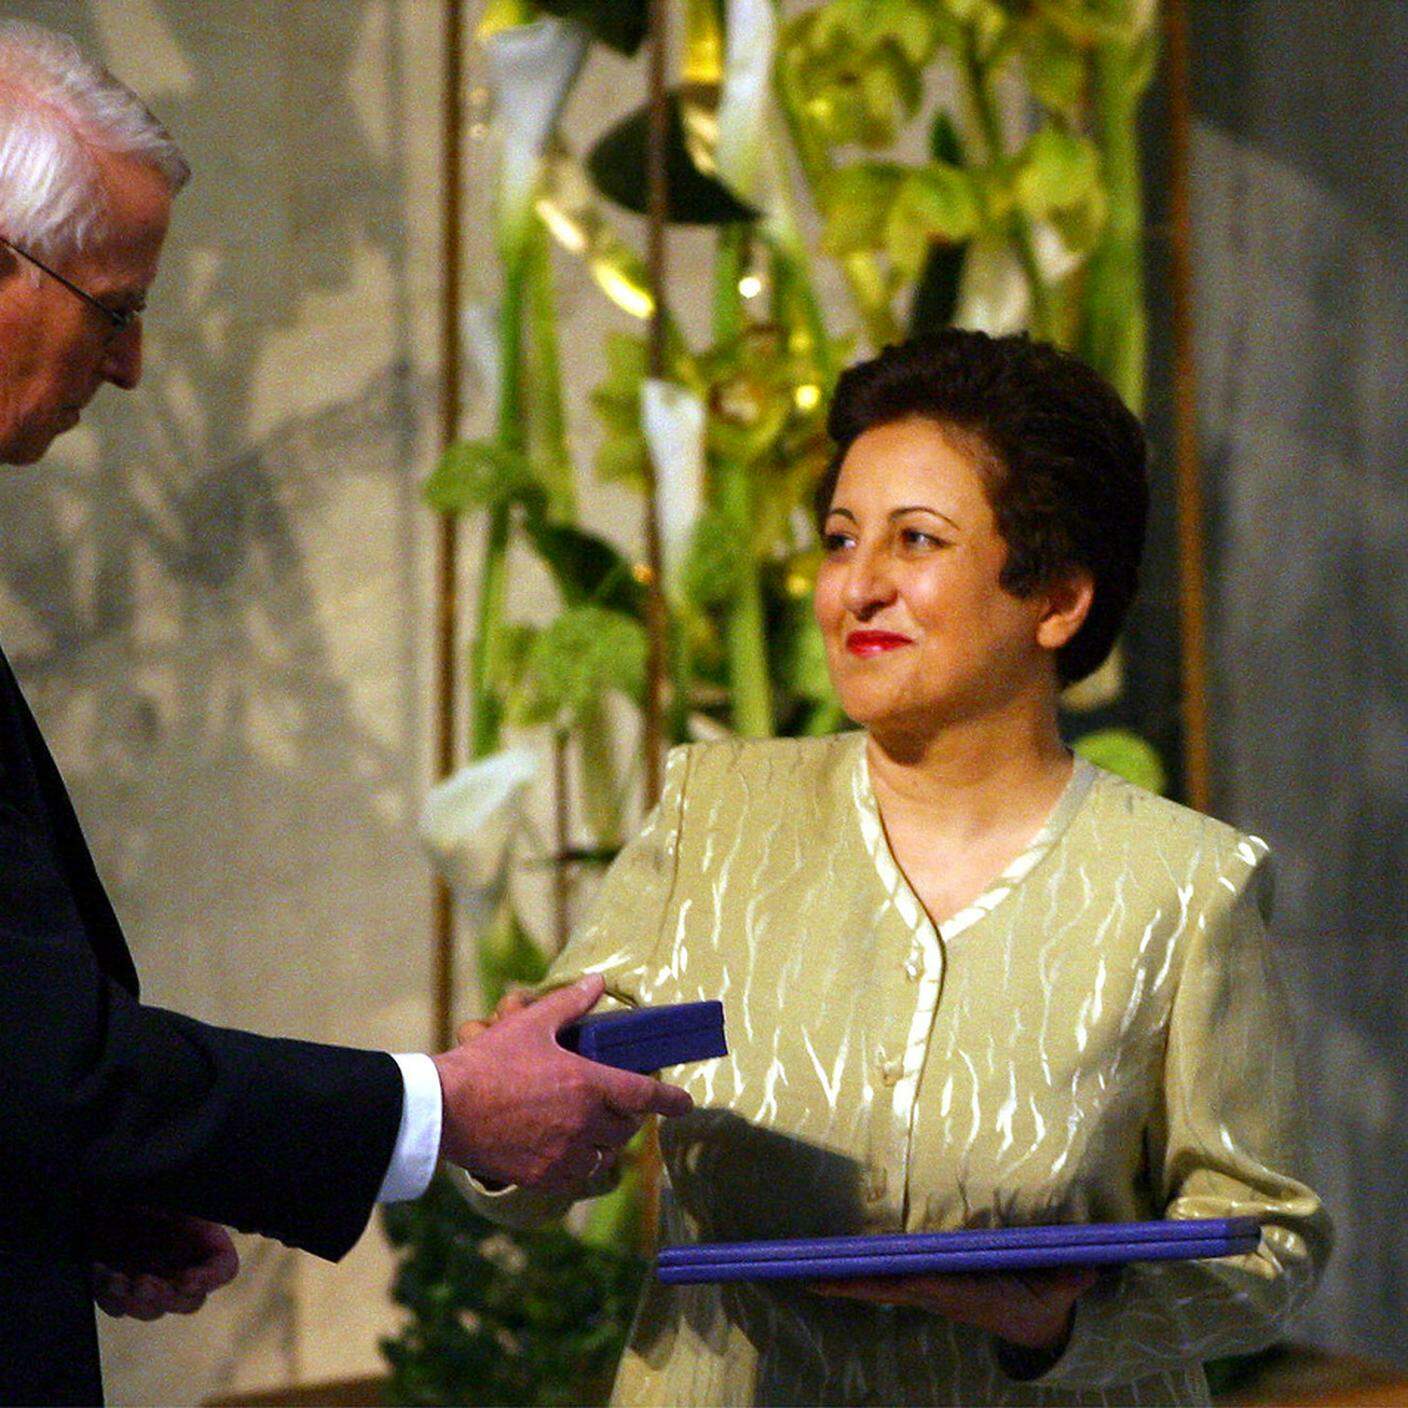 L'attivista iraniana Shirin Ebadi, a destra, riceve il premio Nobel per la pace 2003 durante una cerimonia nel municipio di Oslo